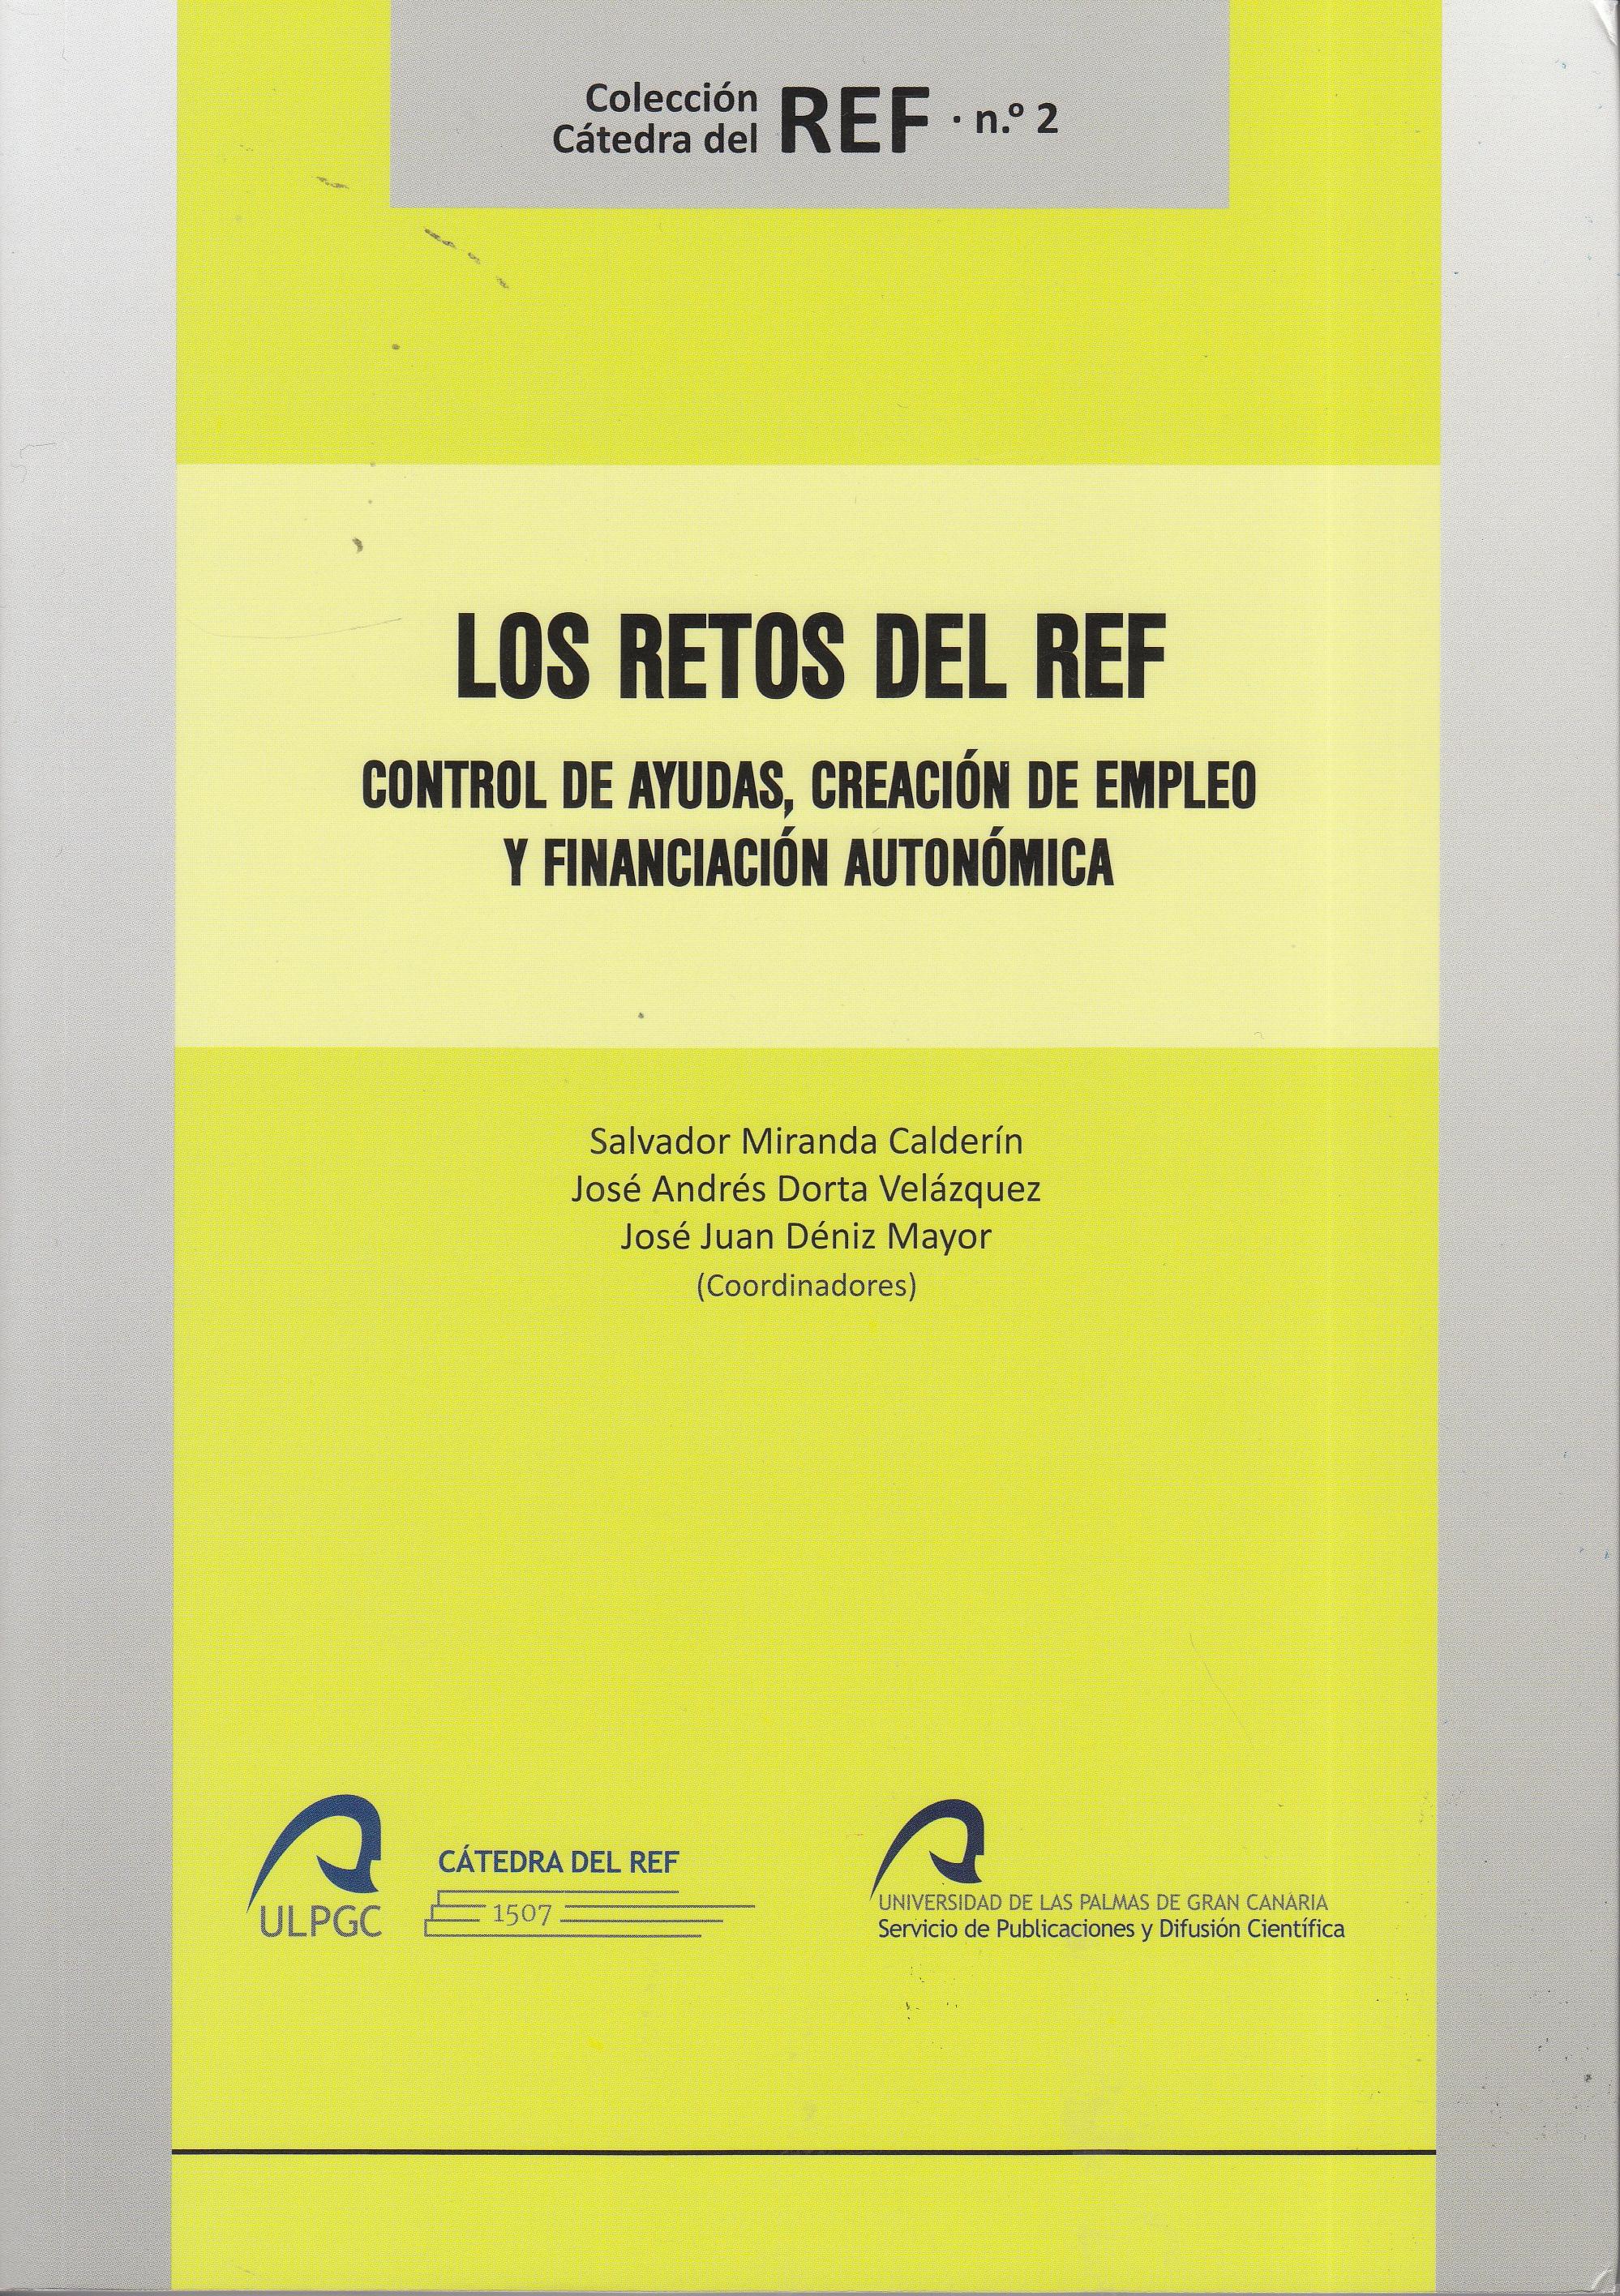 Los retos del REF "Control de ayudas, creación de empleo y financiación autonómica"